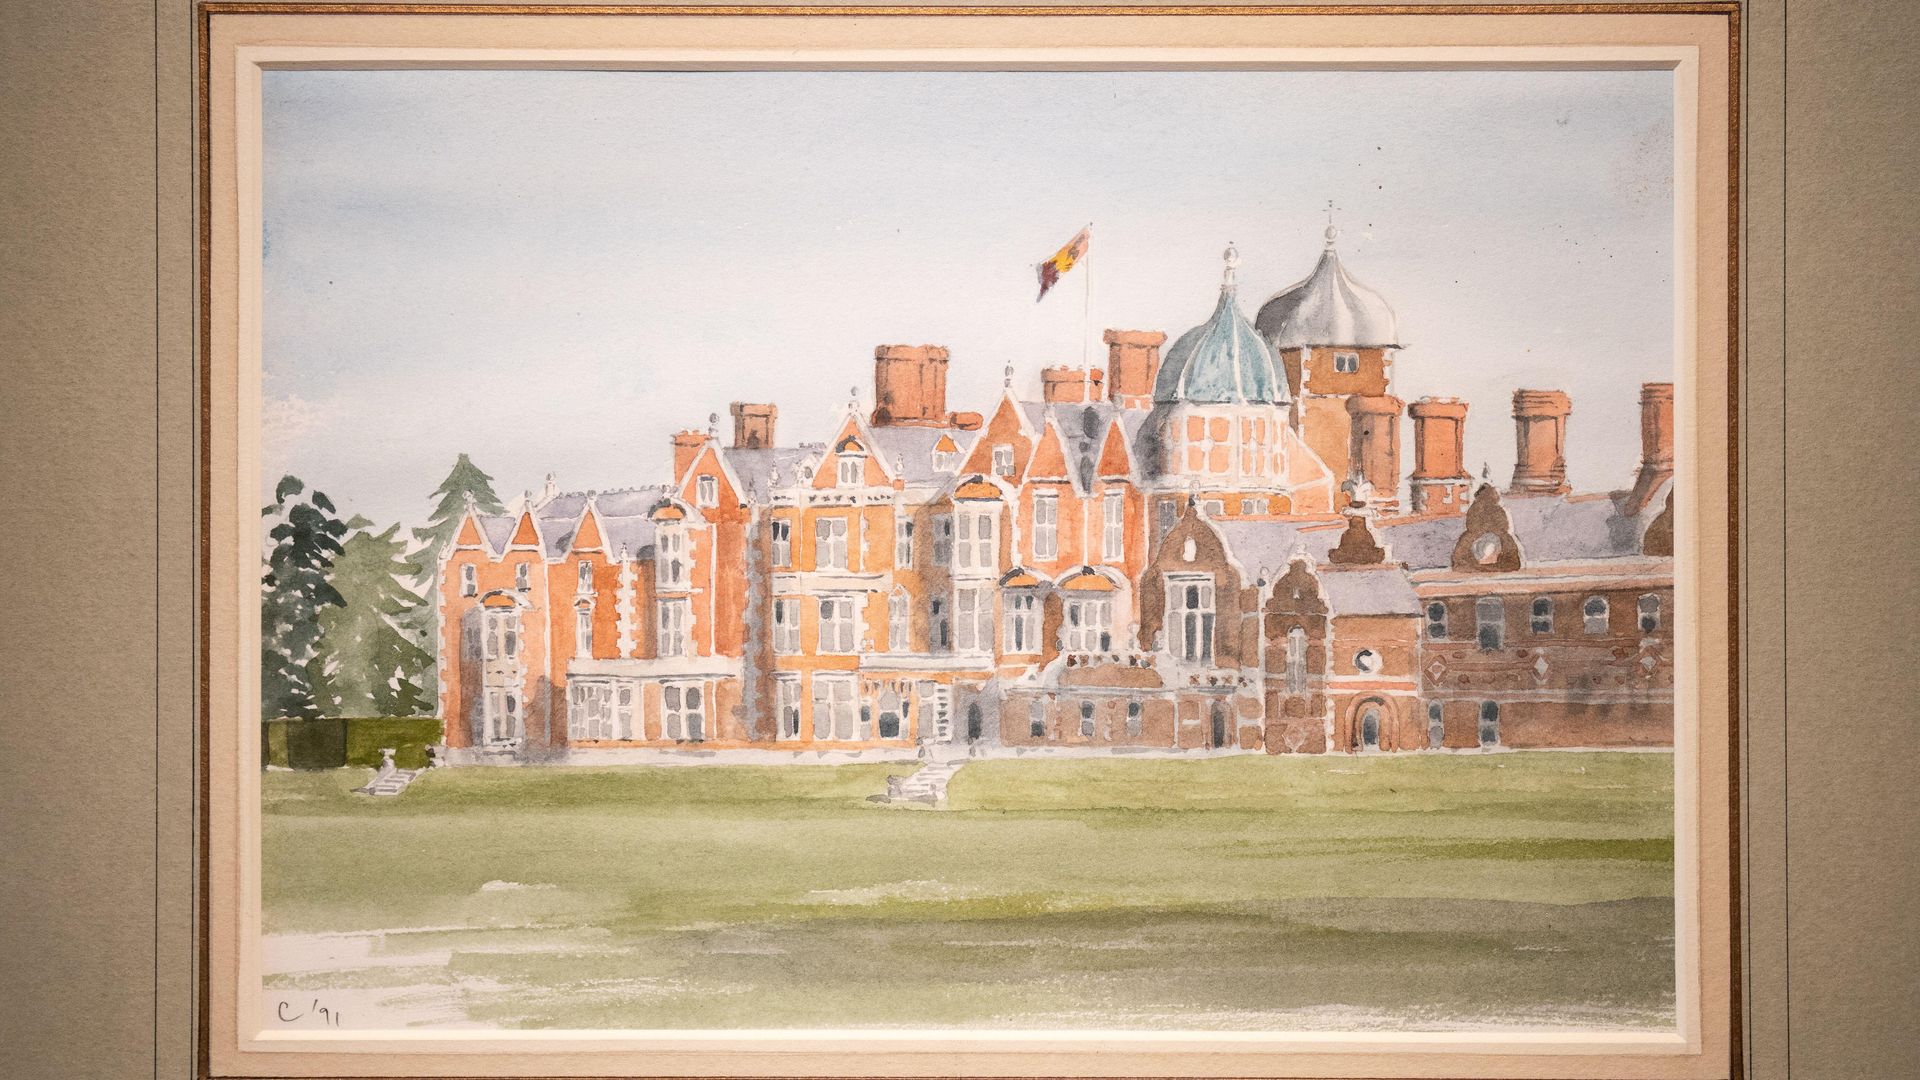 A watercolour portrait of Sandringham House